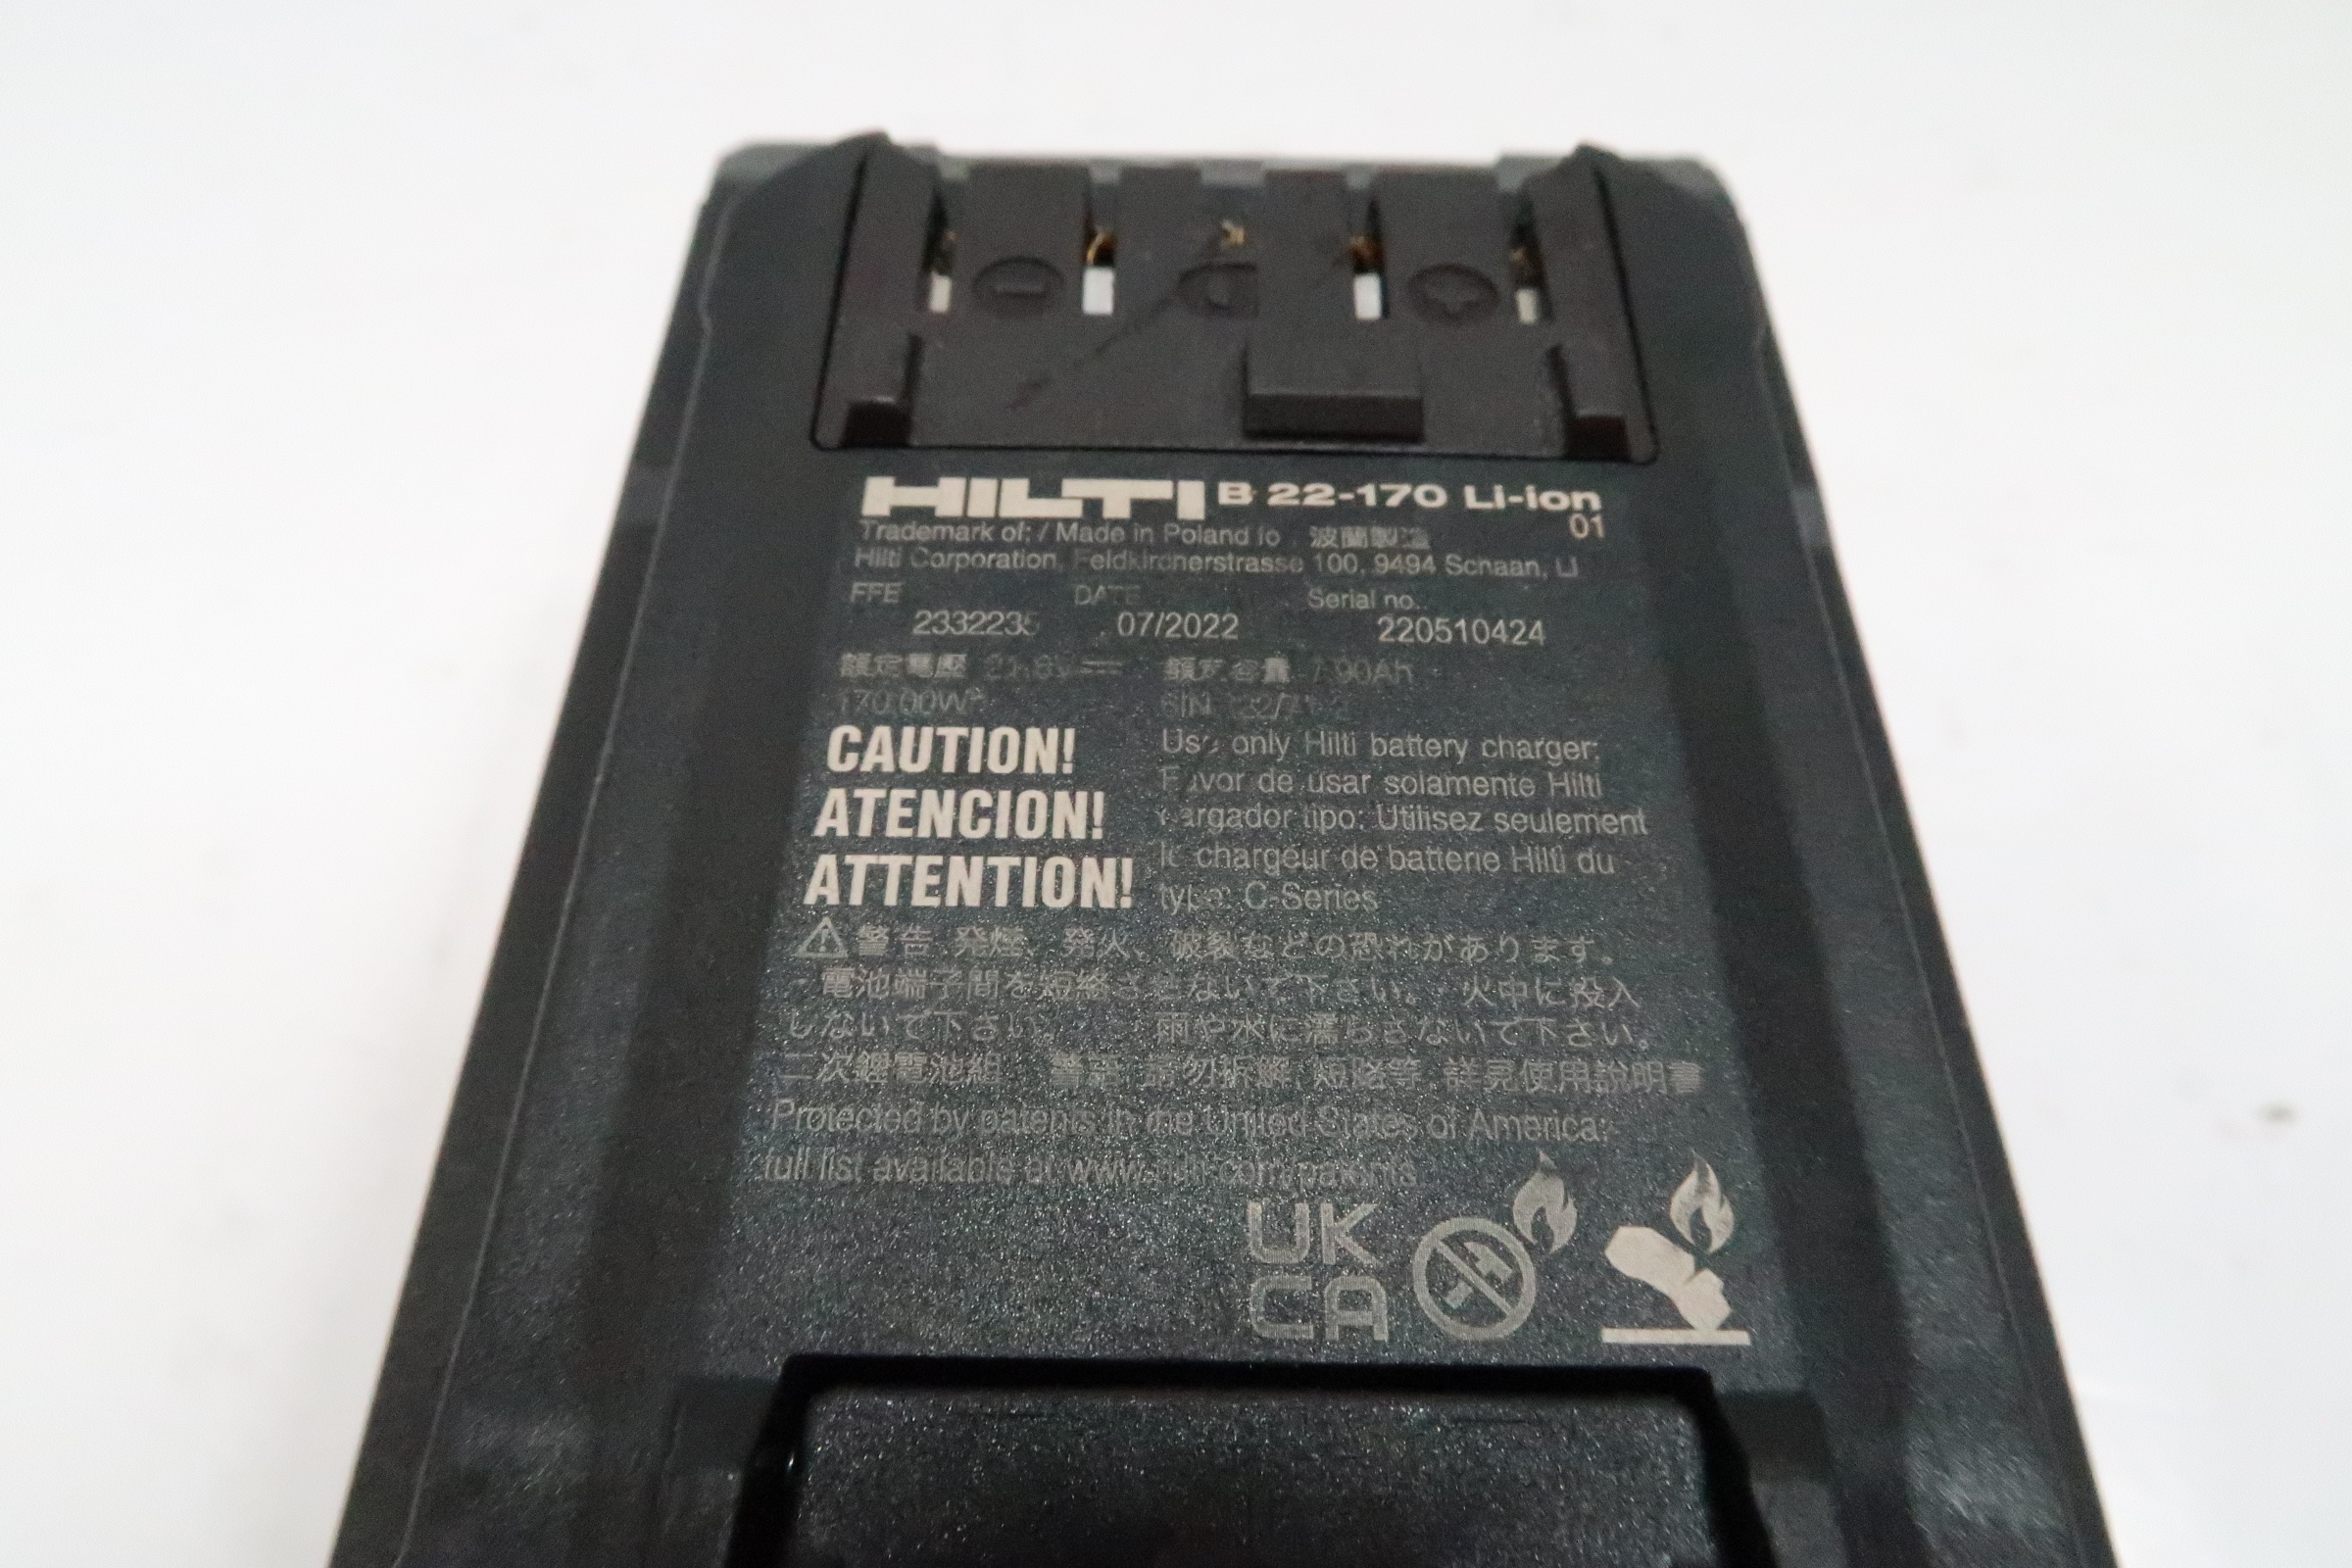  TIPOW-TECH Chargeur de Batterie Voiture Intelligent